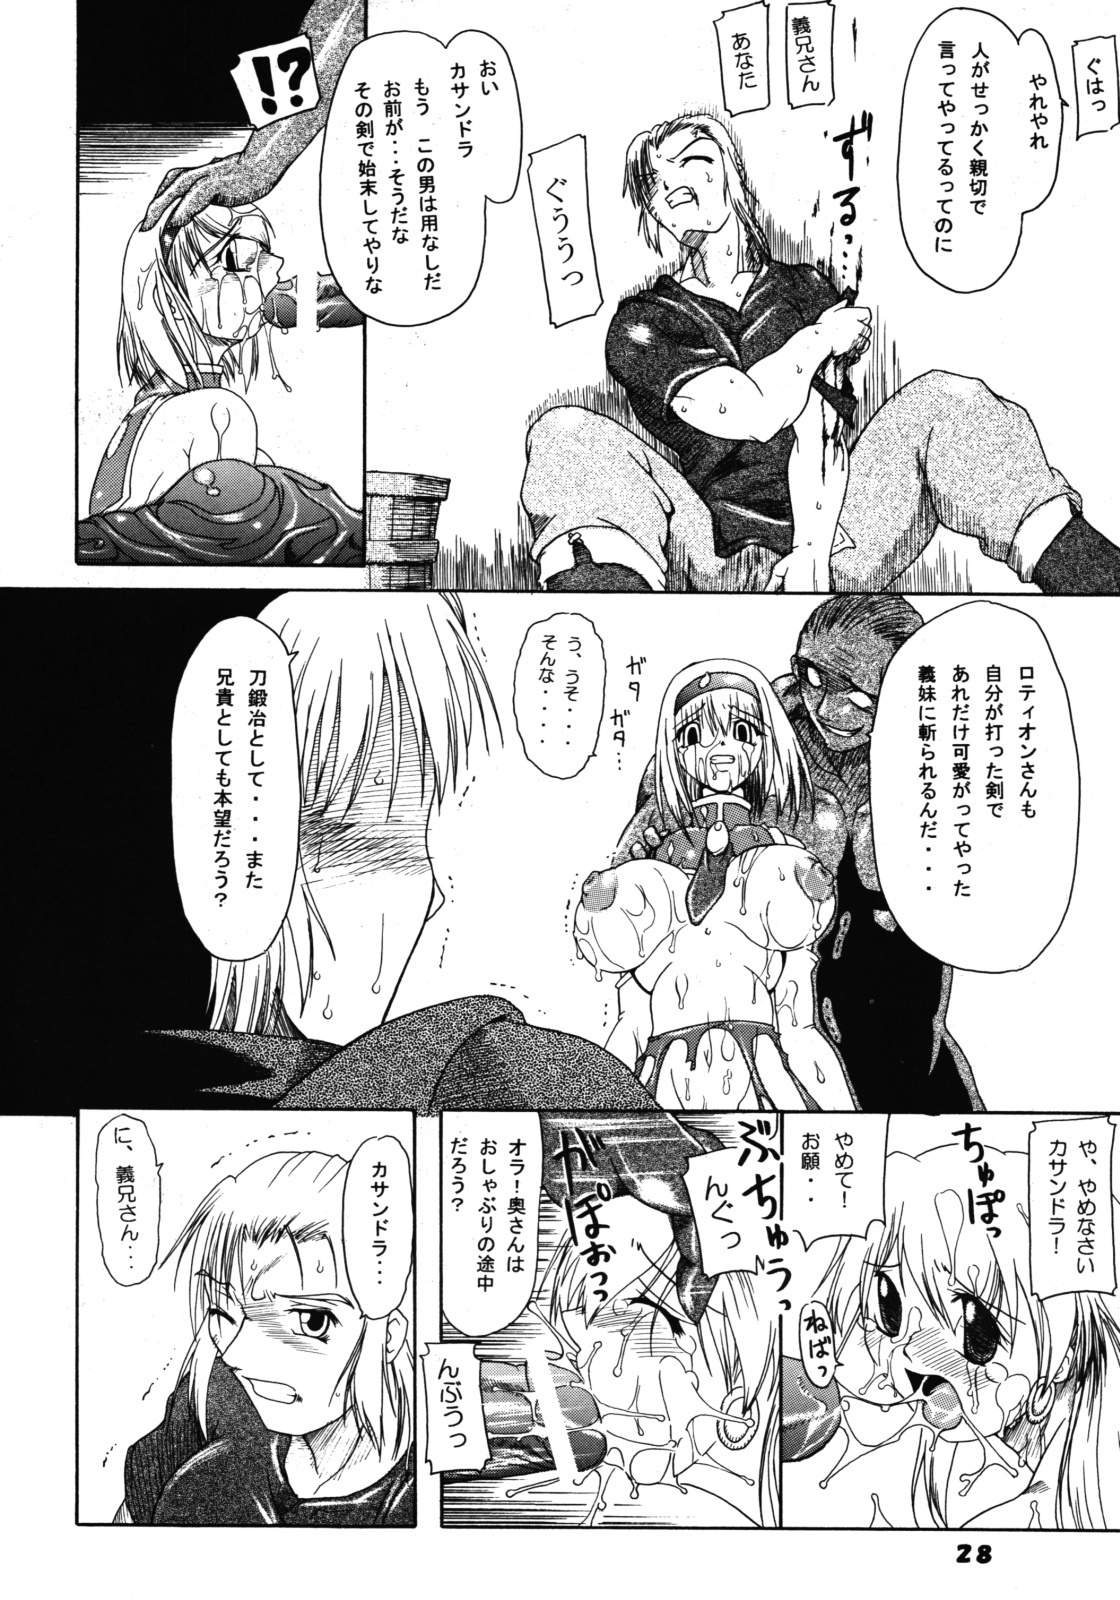 (SC24) [Furuya (Take)] Kakugee Zanmai 4 (Darkstalkers, SoulCalibur) page 27 full